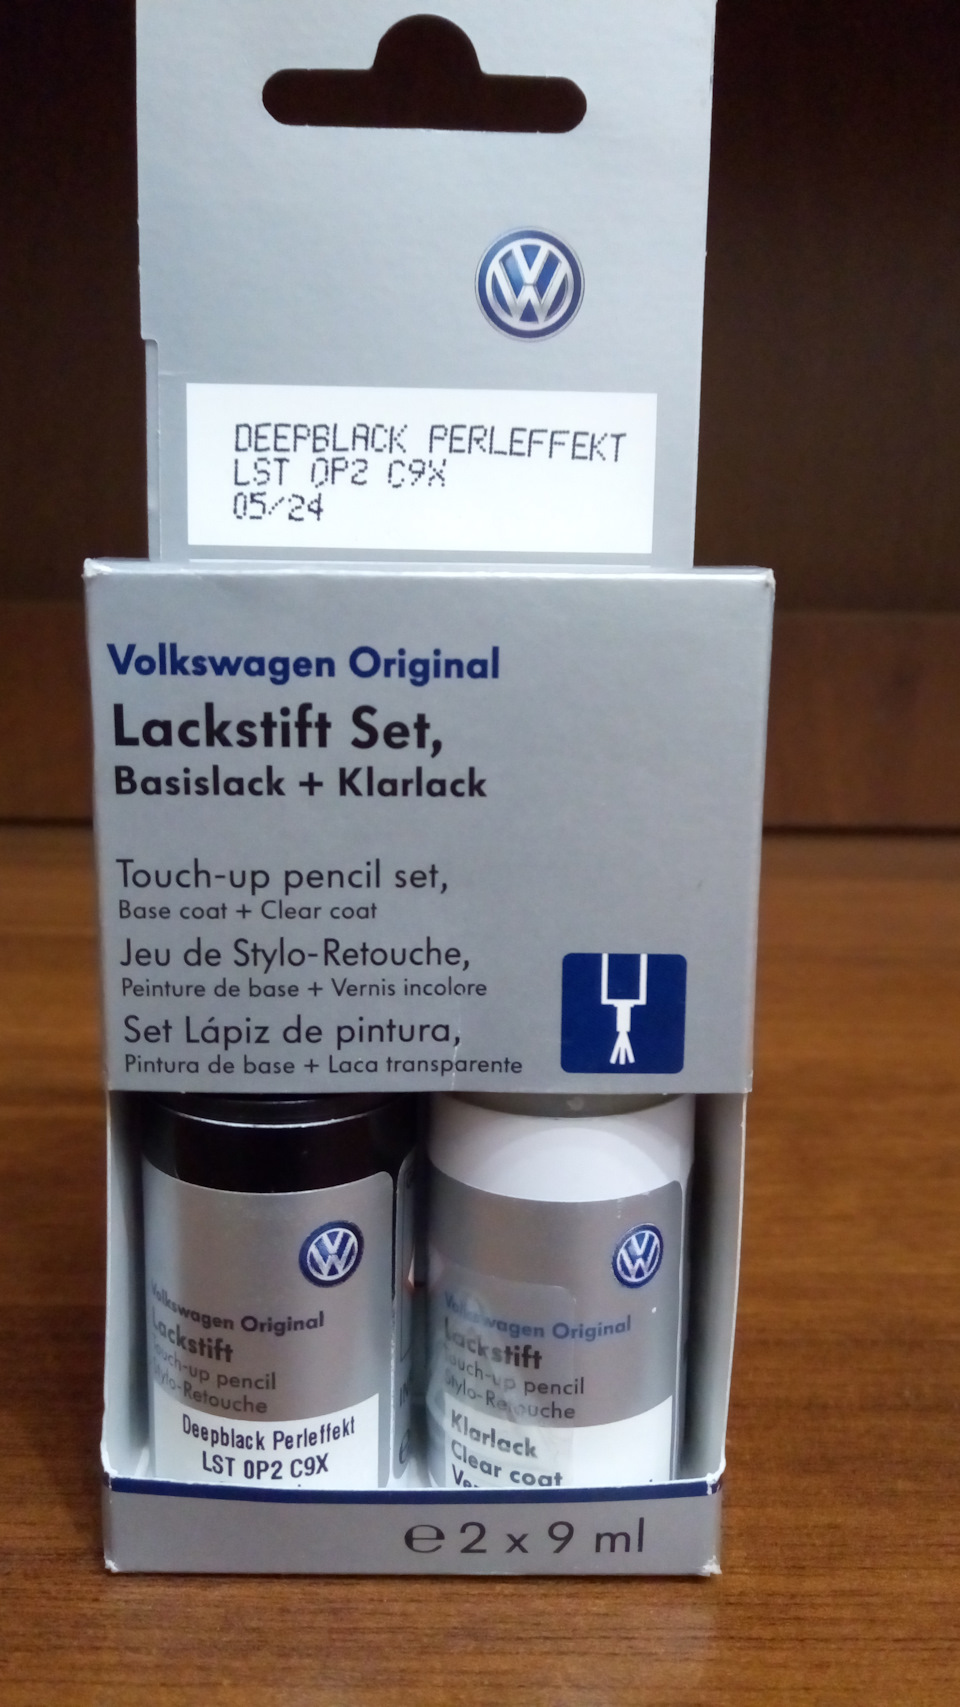 VW Original Lackstift Set Deepblack Perleffekt LST0P2C9X